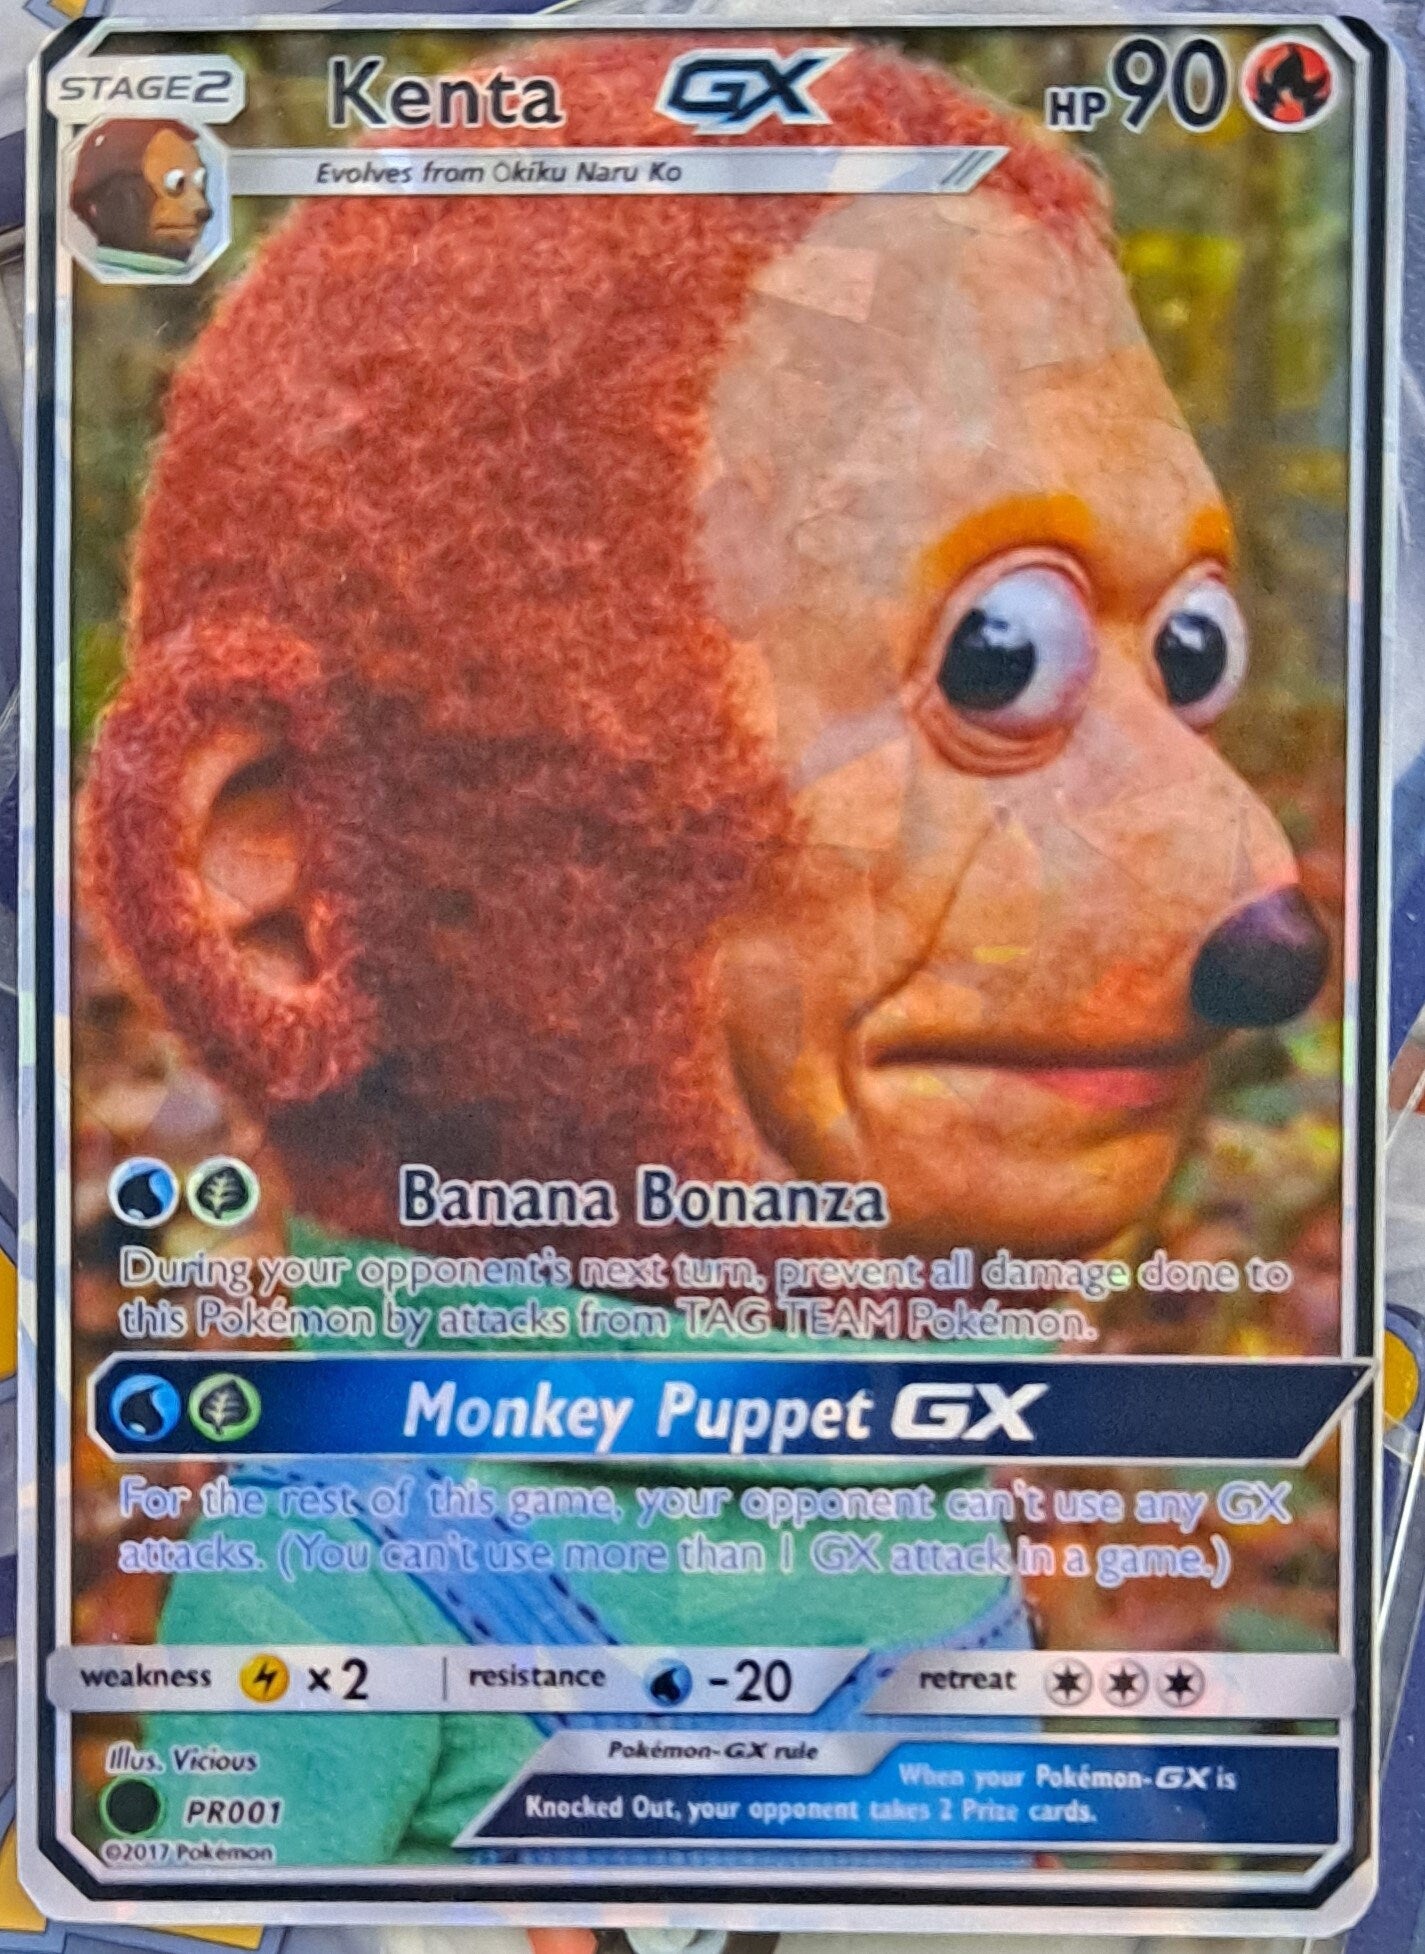 Monkey Puppet meme Pokemon Card